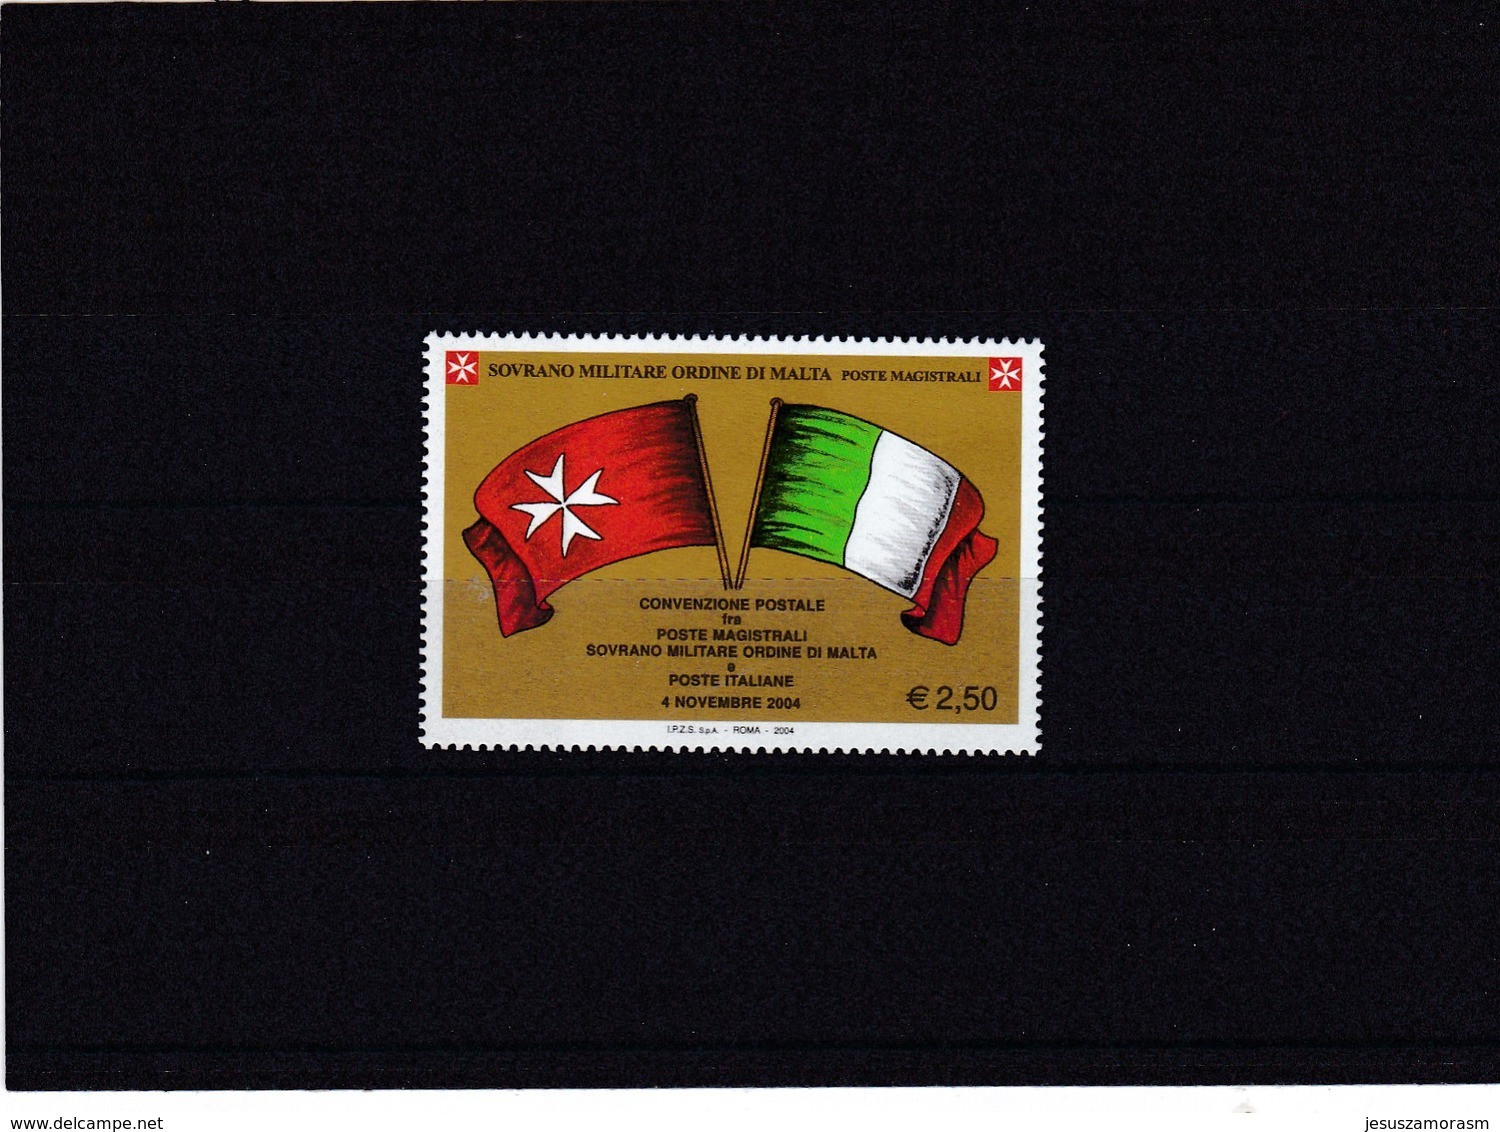 Orden De Malta Nº 793 - Sovrano Militare Ordine Di Malta